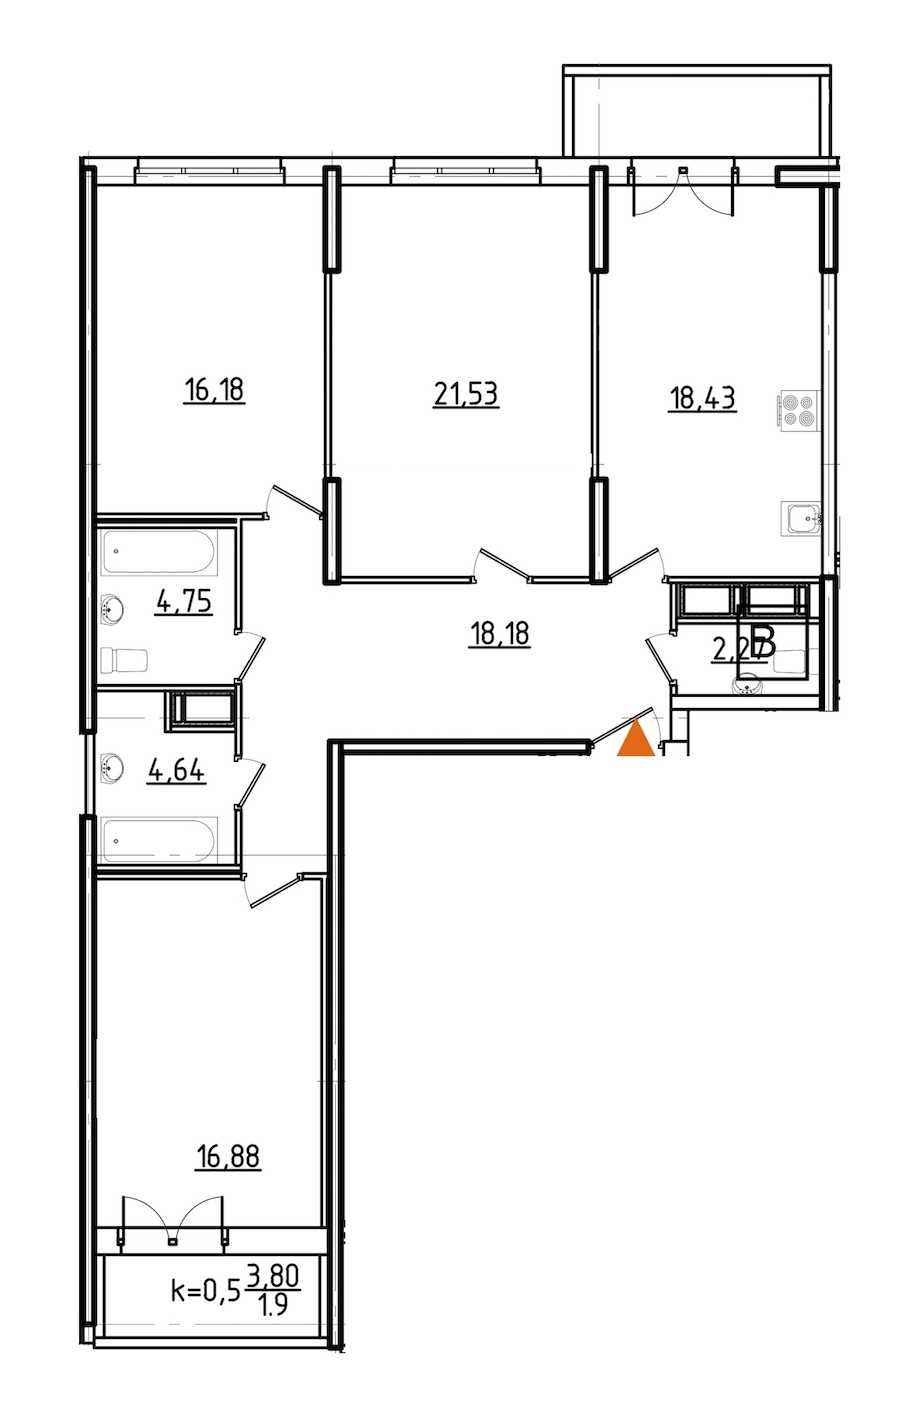 Трехкомнатная квартира в : площадь 106.06 м2 , этаж: 4 – купить в Санкт-Петербурге